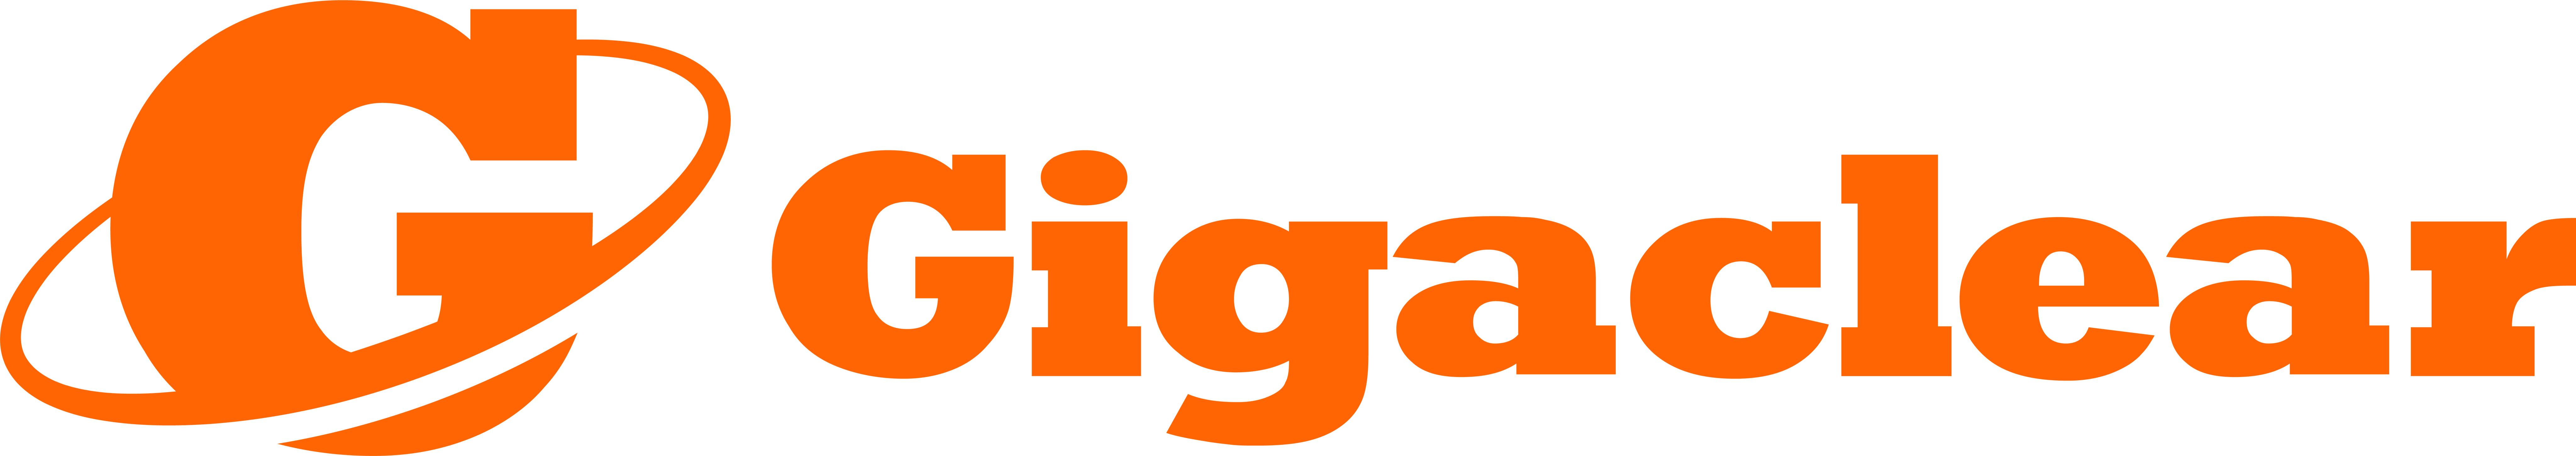 gigaclear logo